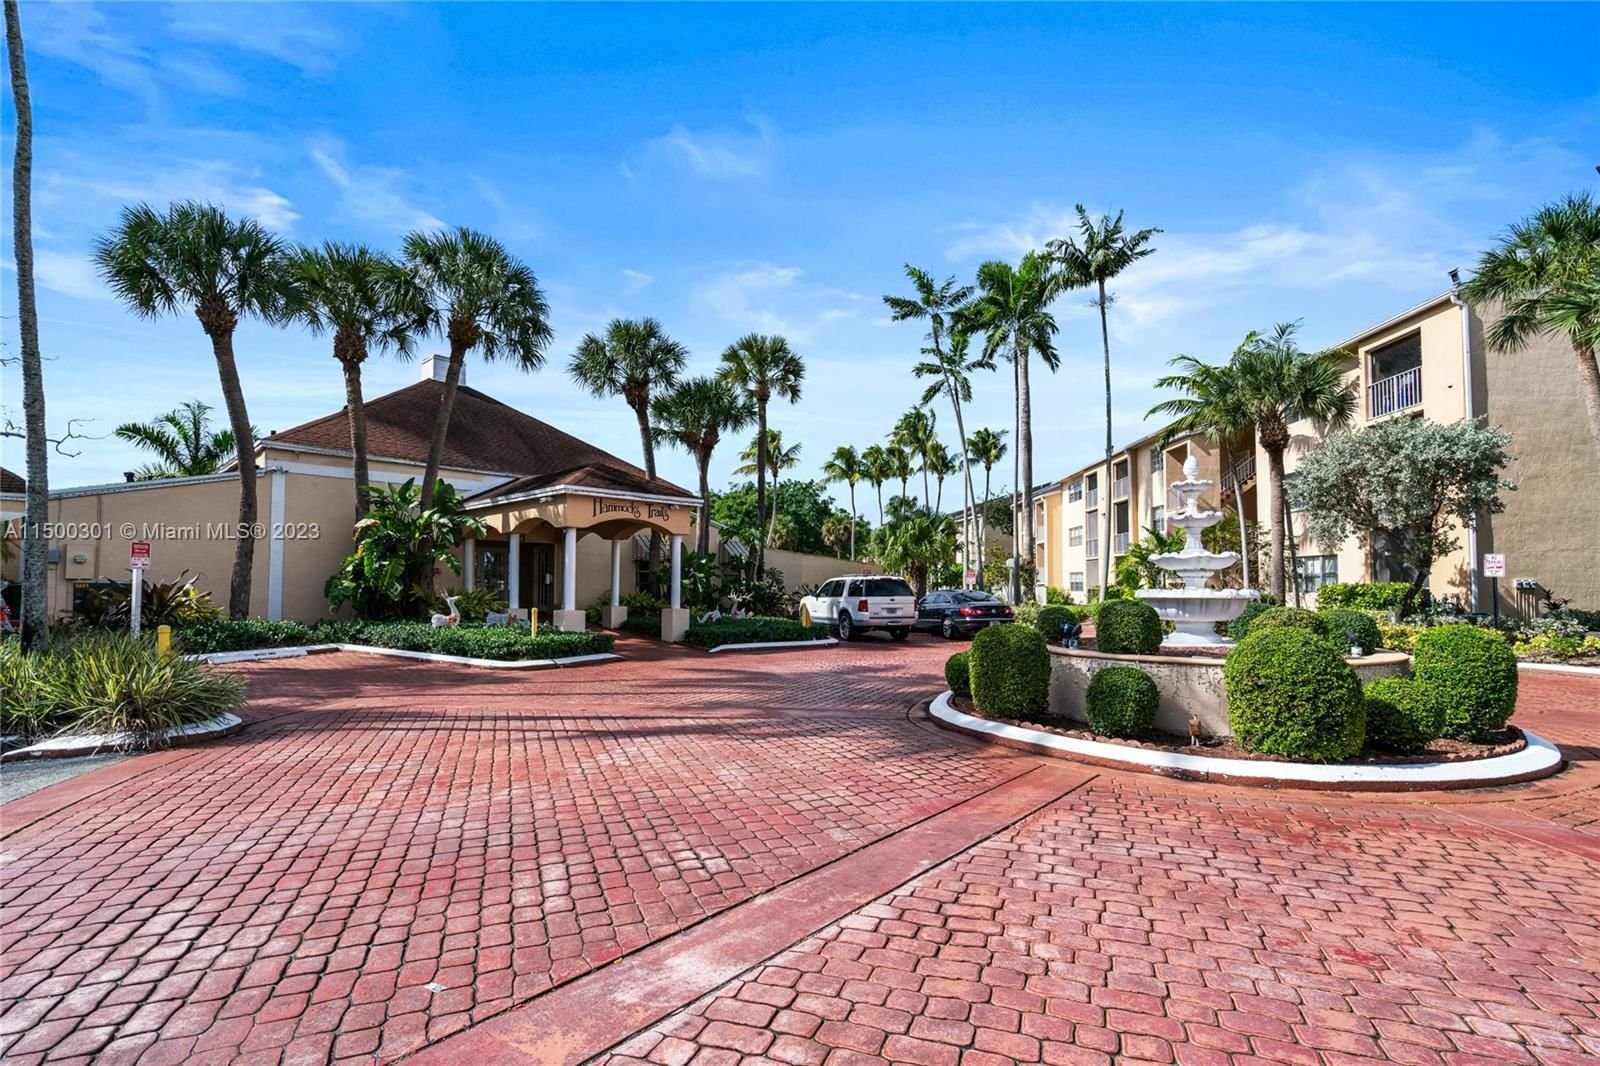 Real estate property located at 15295 106th Ln #717, Miami-Dade County, HAMMOCKS TRAILS CONDO, Miami, FL